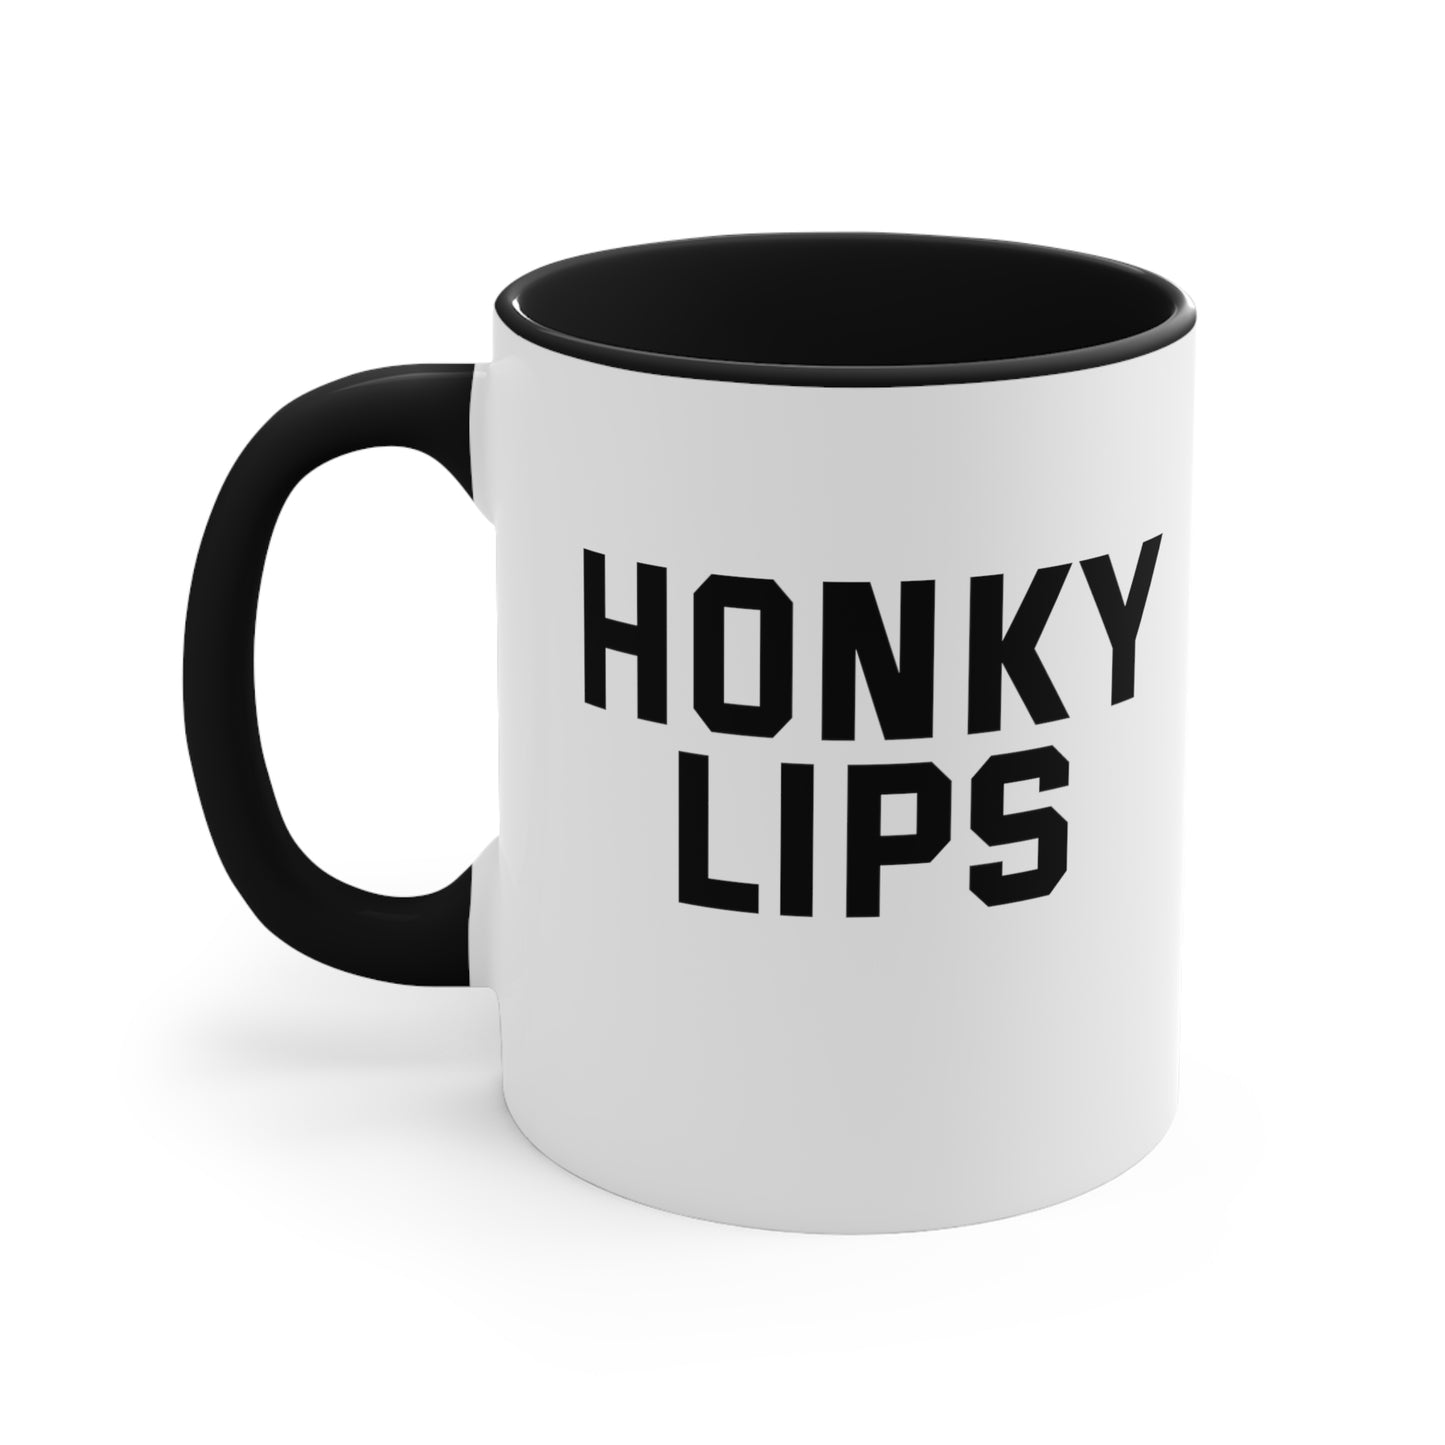 Honky Lips Mug, 11oz